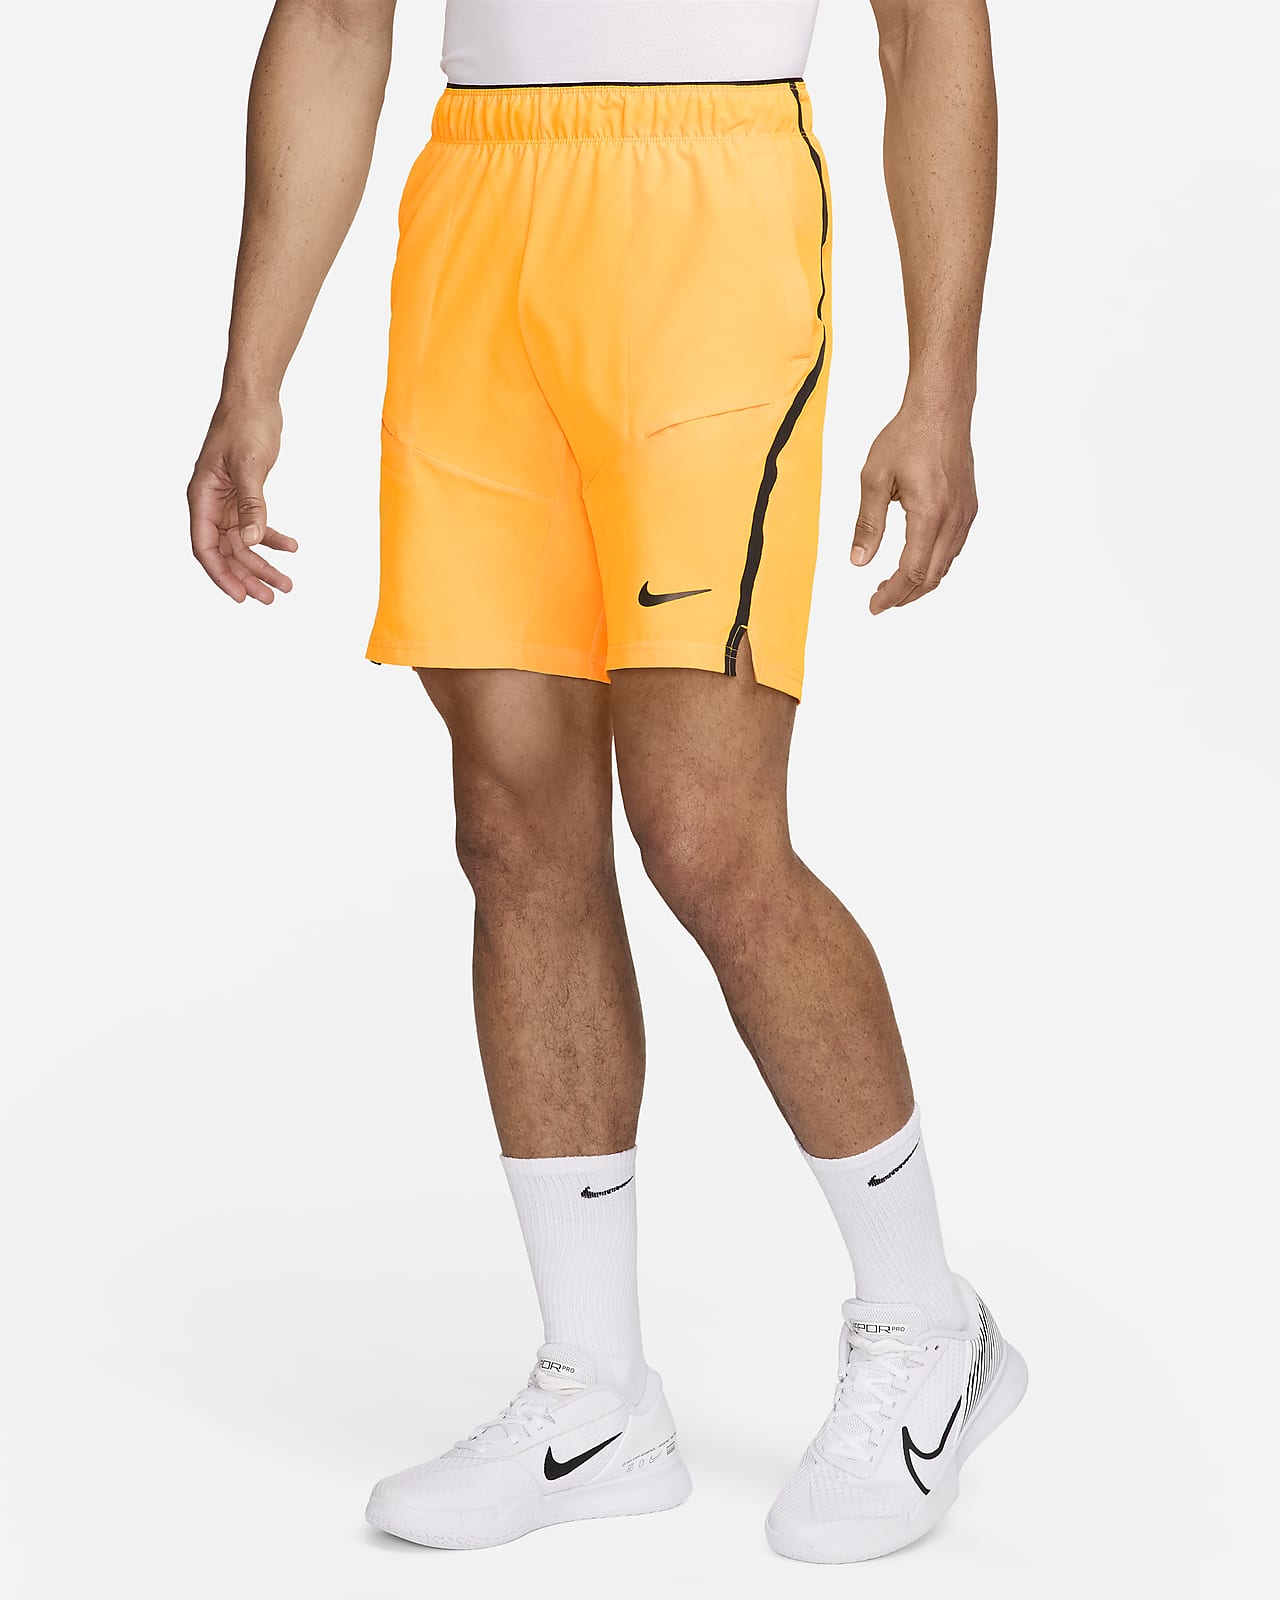 Shorts de tenis de 23 cm para hombre NikeCourt Advantage